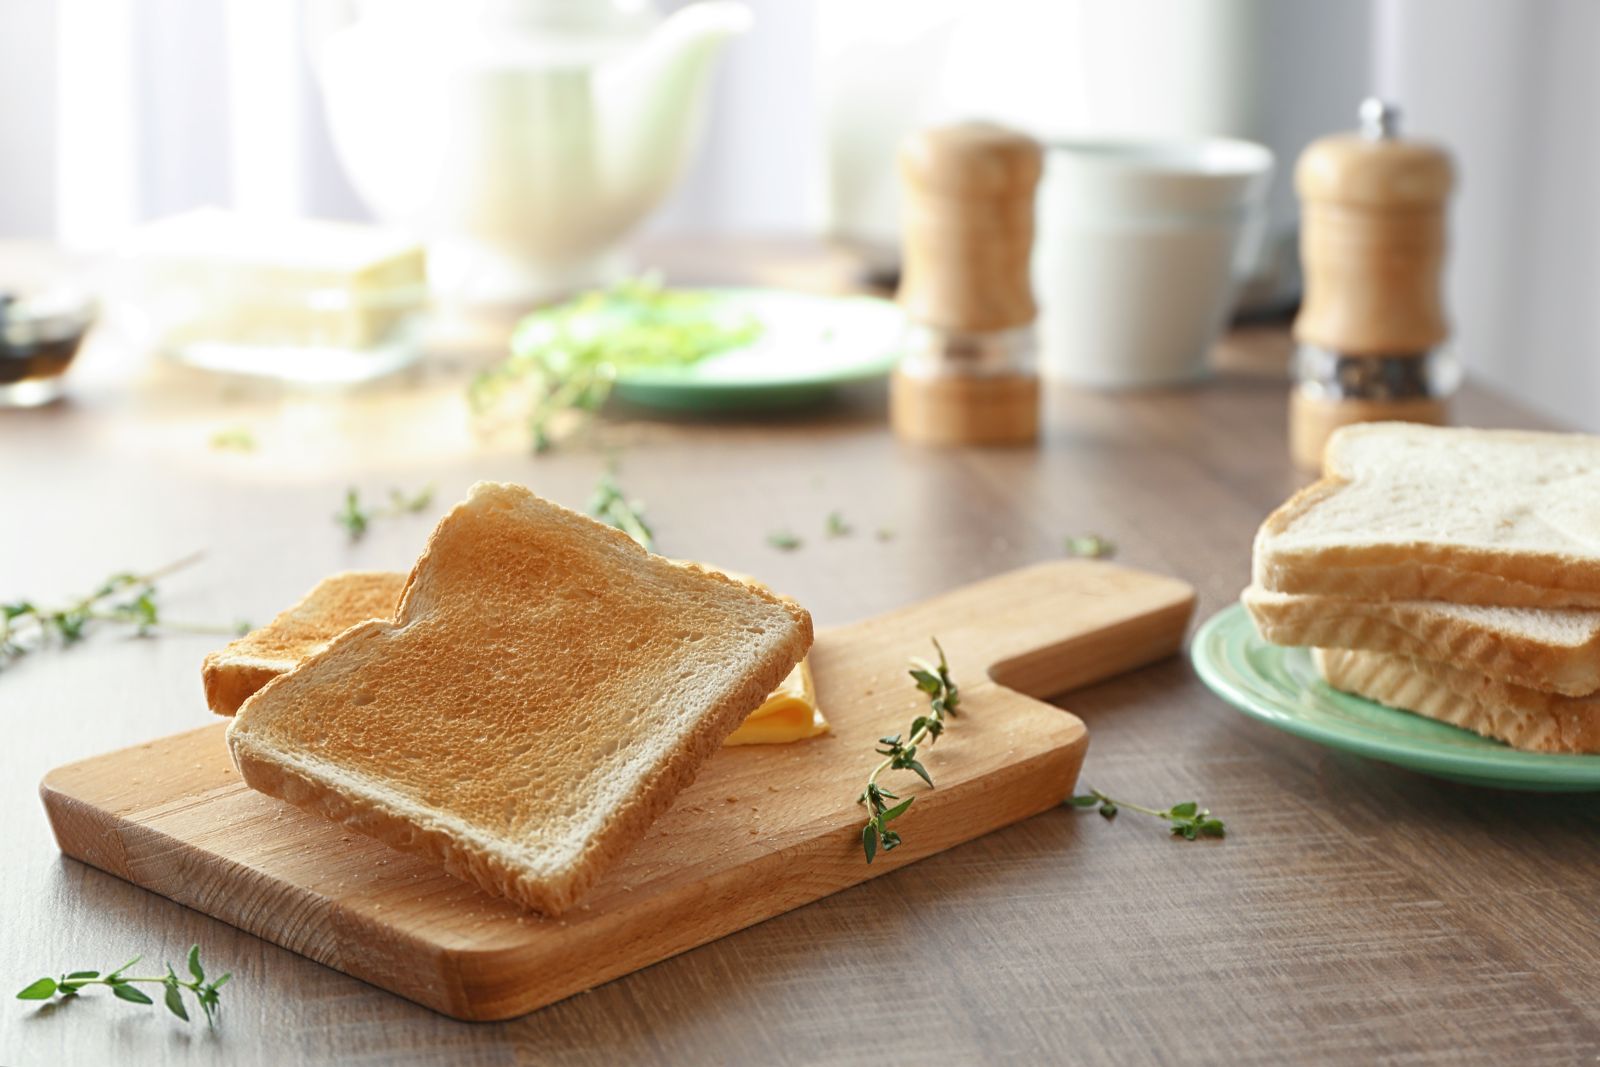 Trung bình mỗi 100 g bánh mì sandwich sẽ cung cấp 230 - 300 kcal